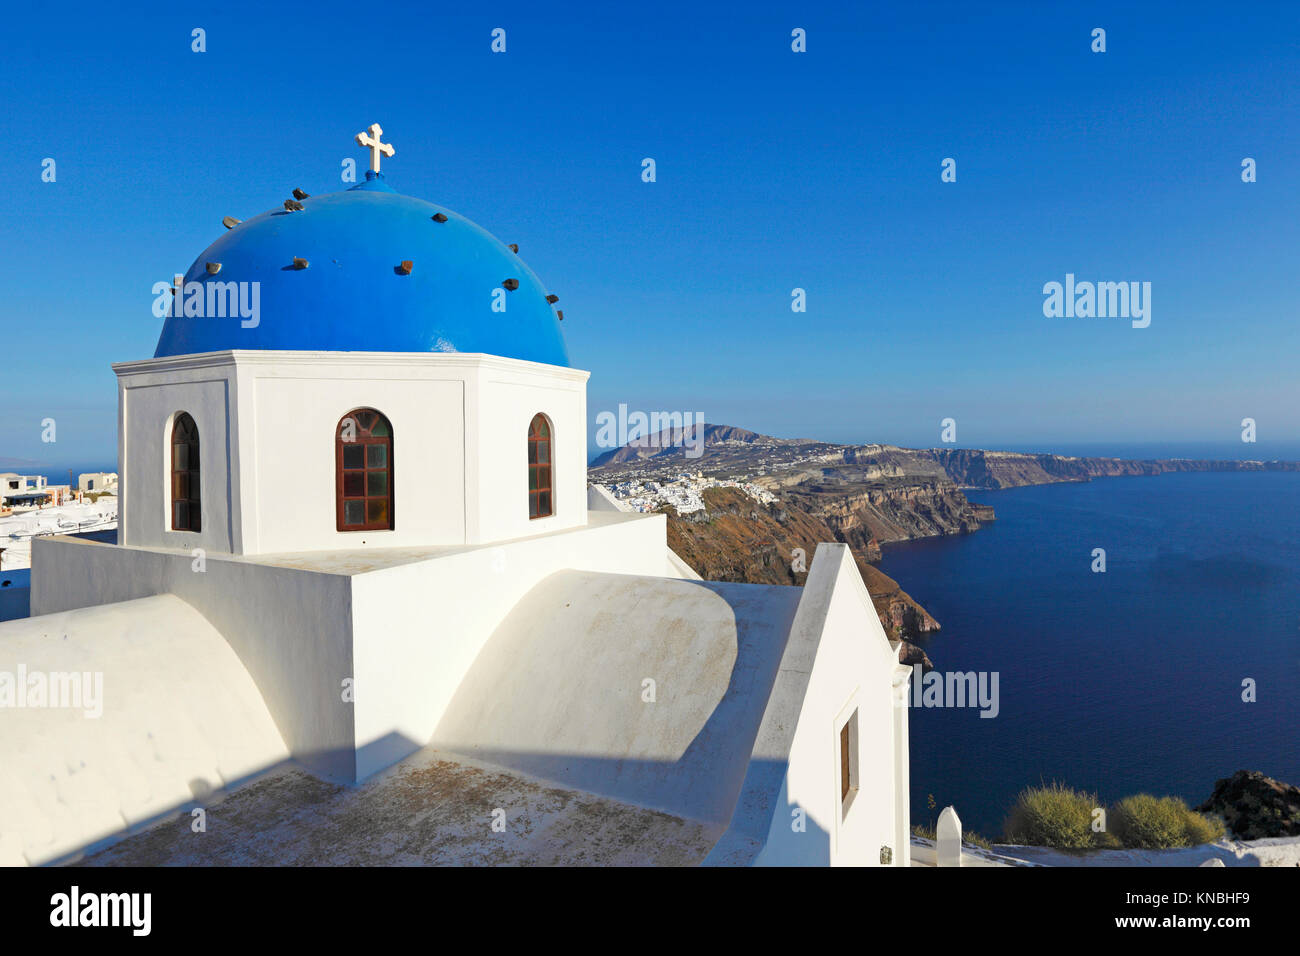 The central church of Imerovigli in Santorini, Greece Stock Photo